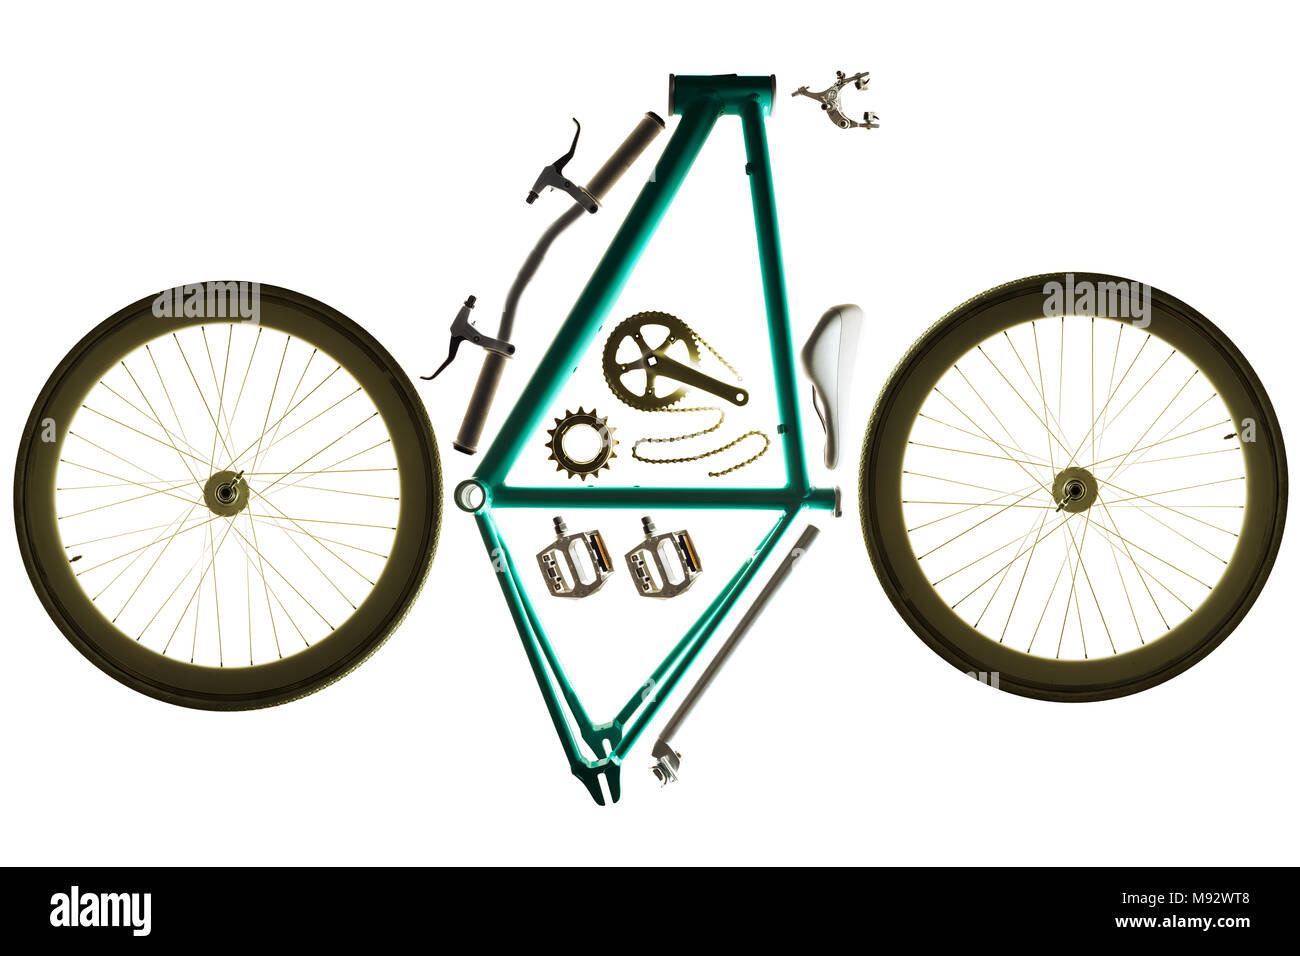 Piezas de bicicleta para montar una bicicleta personalizada, Foto de estudio sobre fondo blanco. Foto de stock